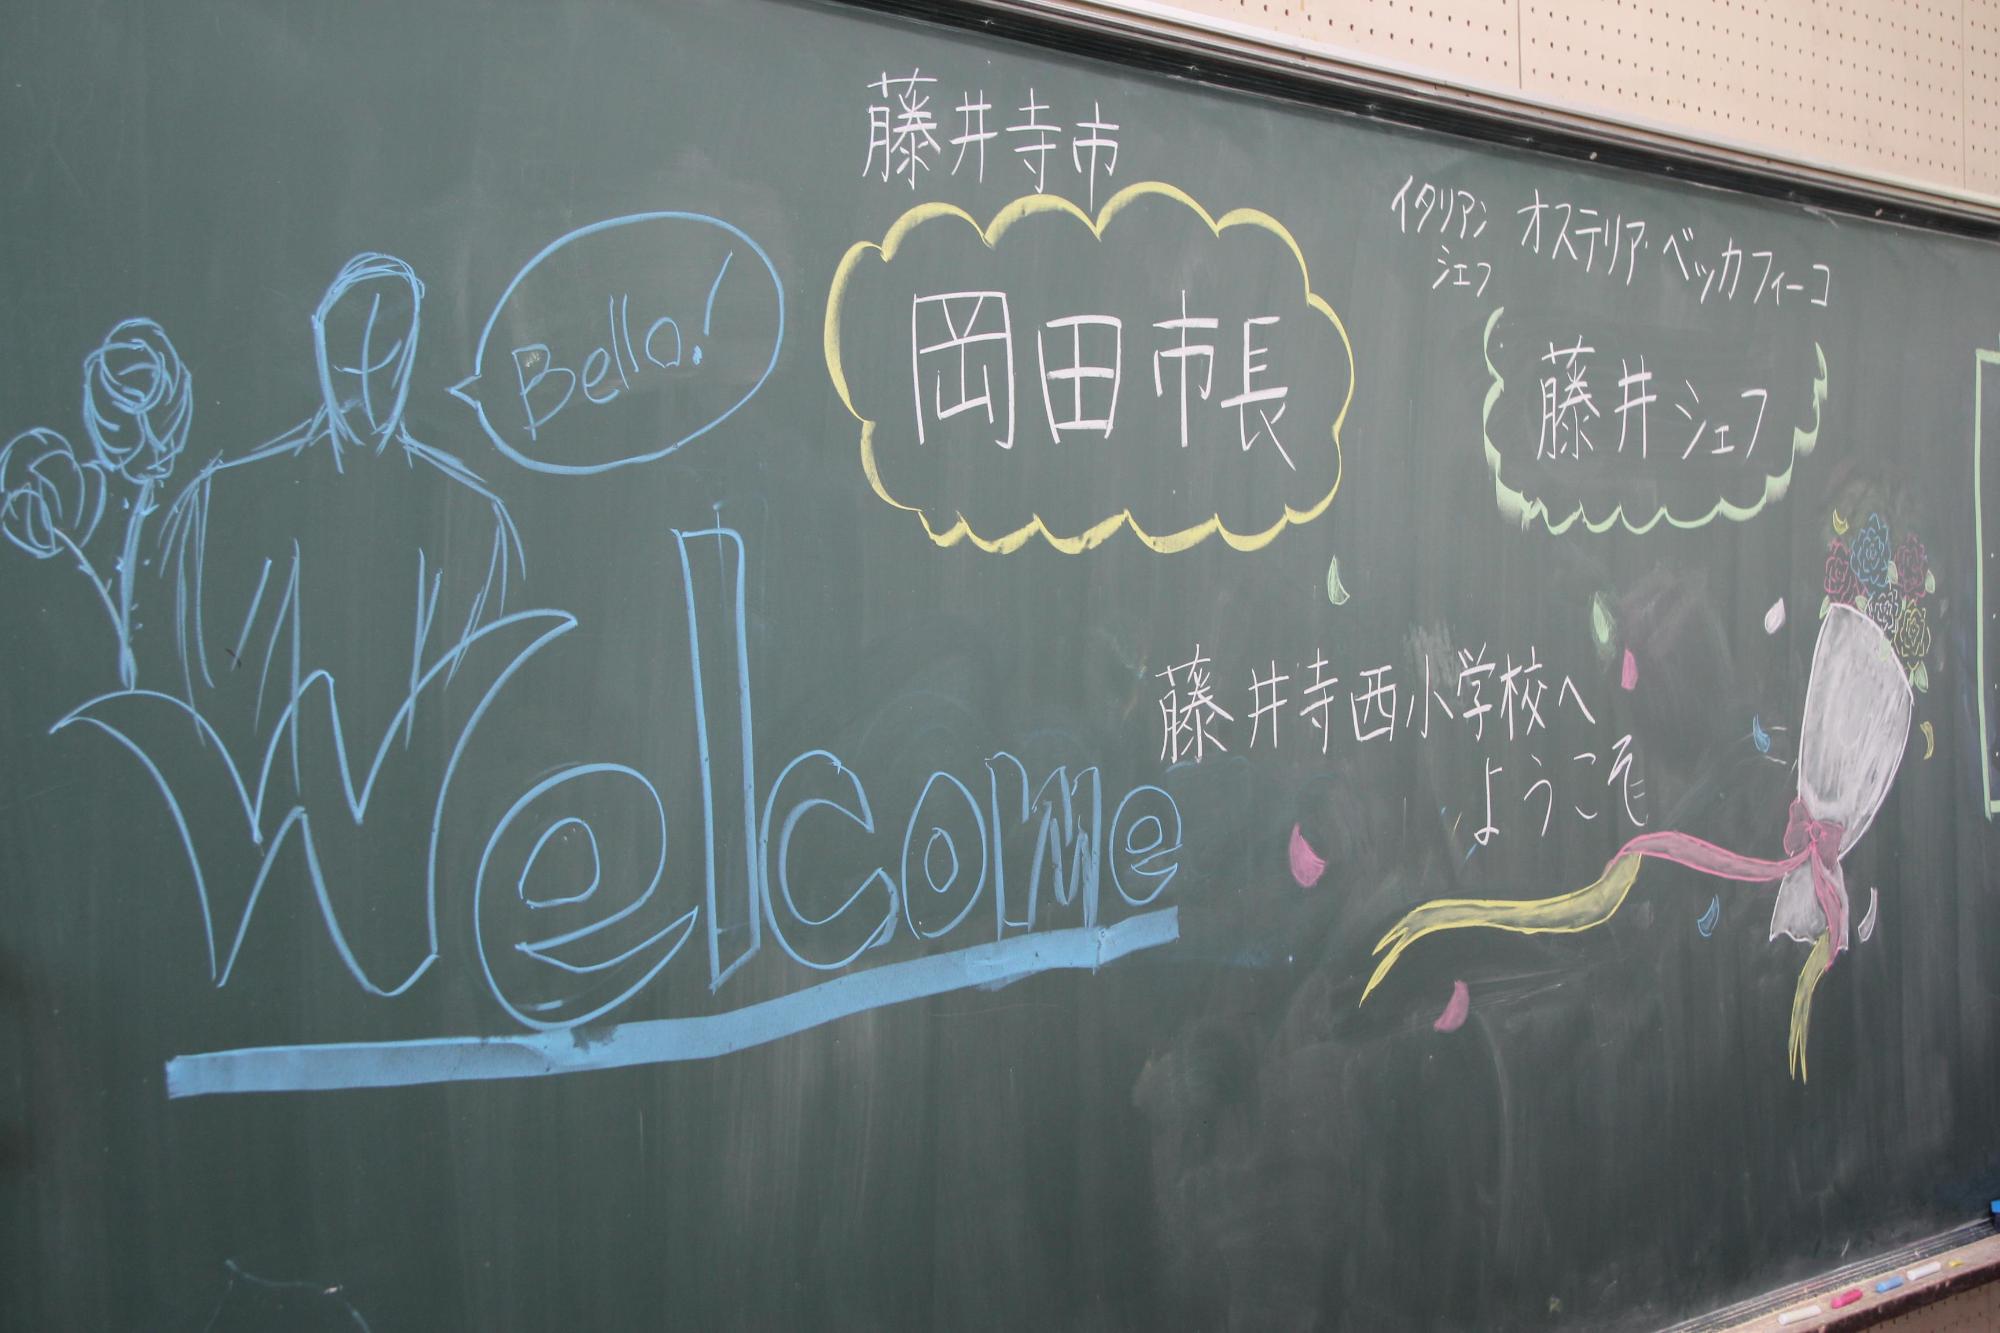 教室の黒板に書かれた藤井シェフと岡田市長へのウェルカムメッセージの写真